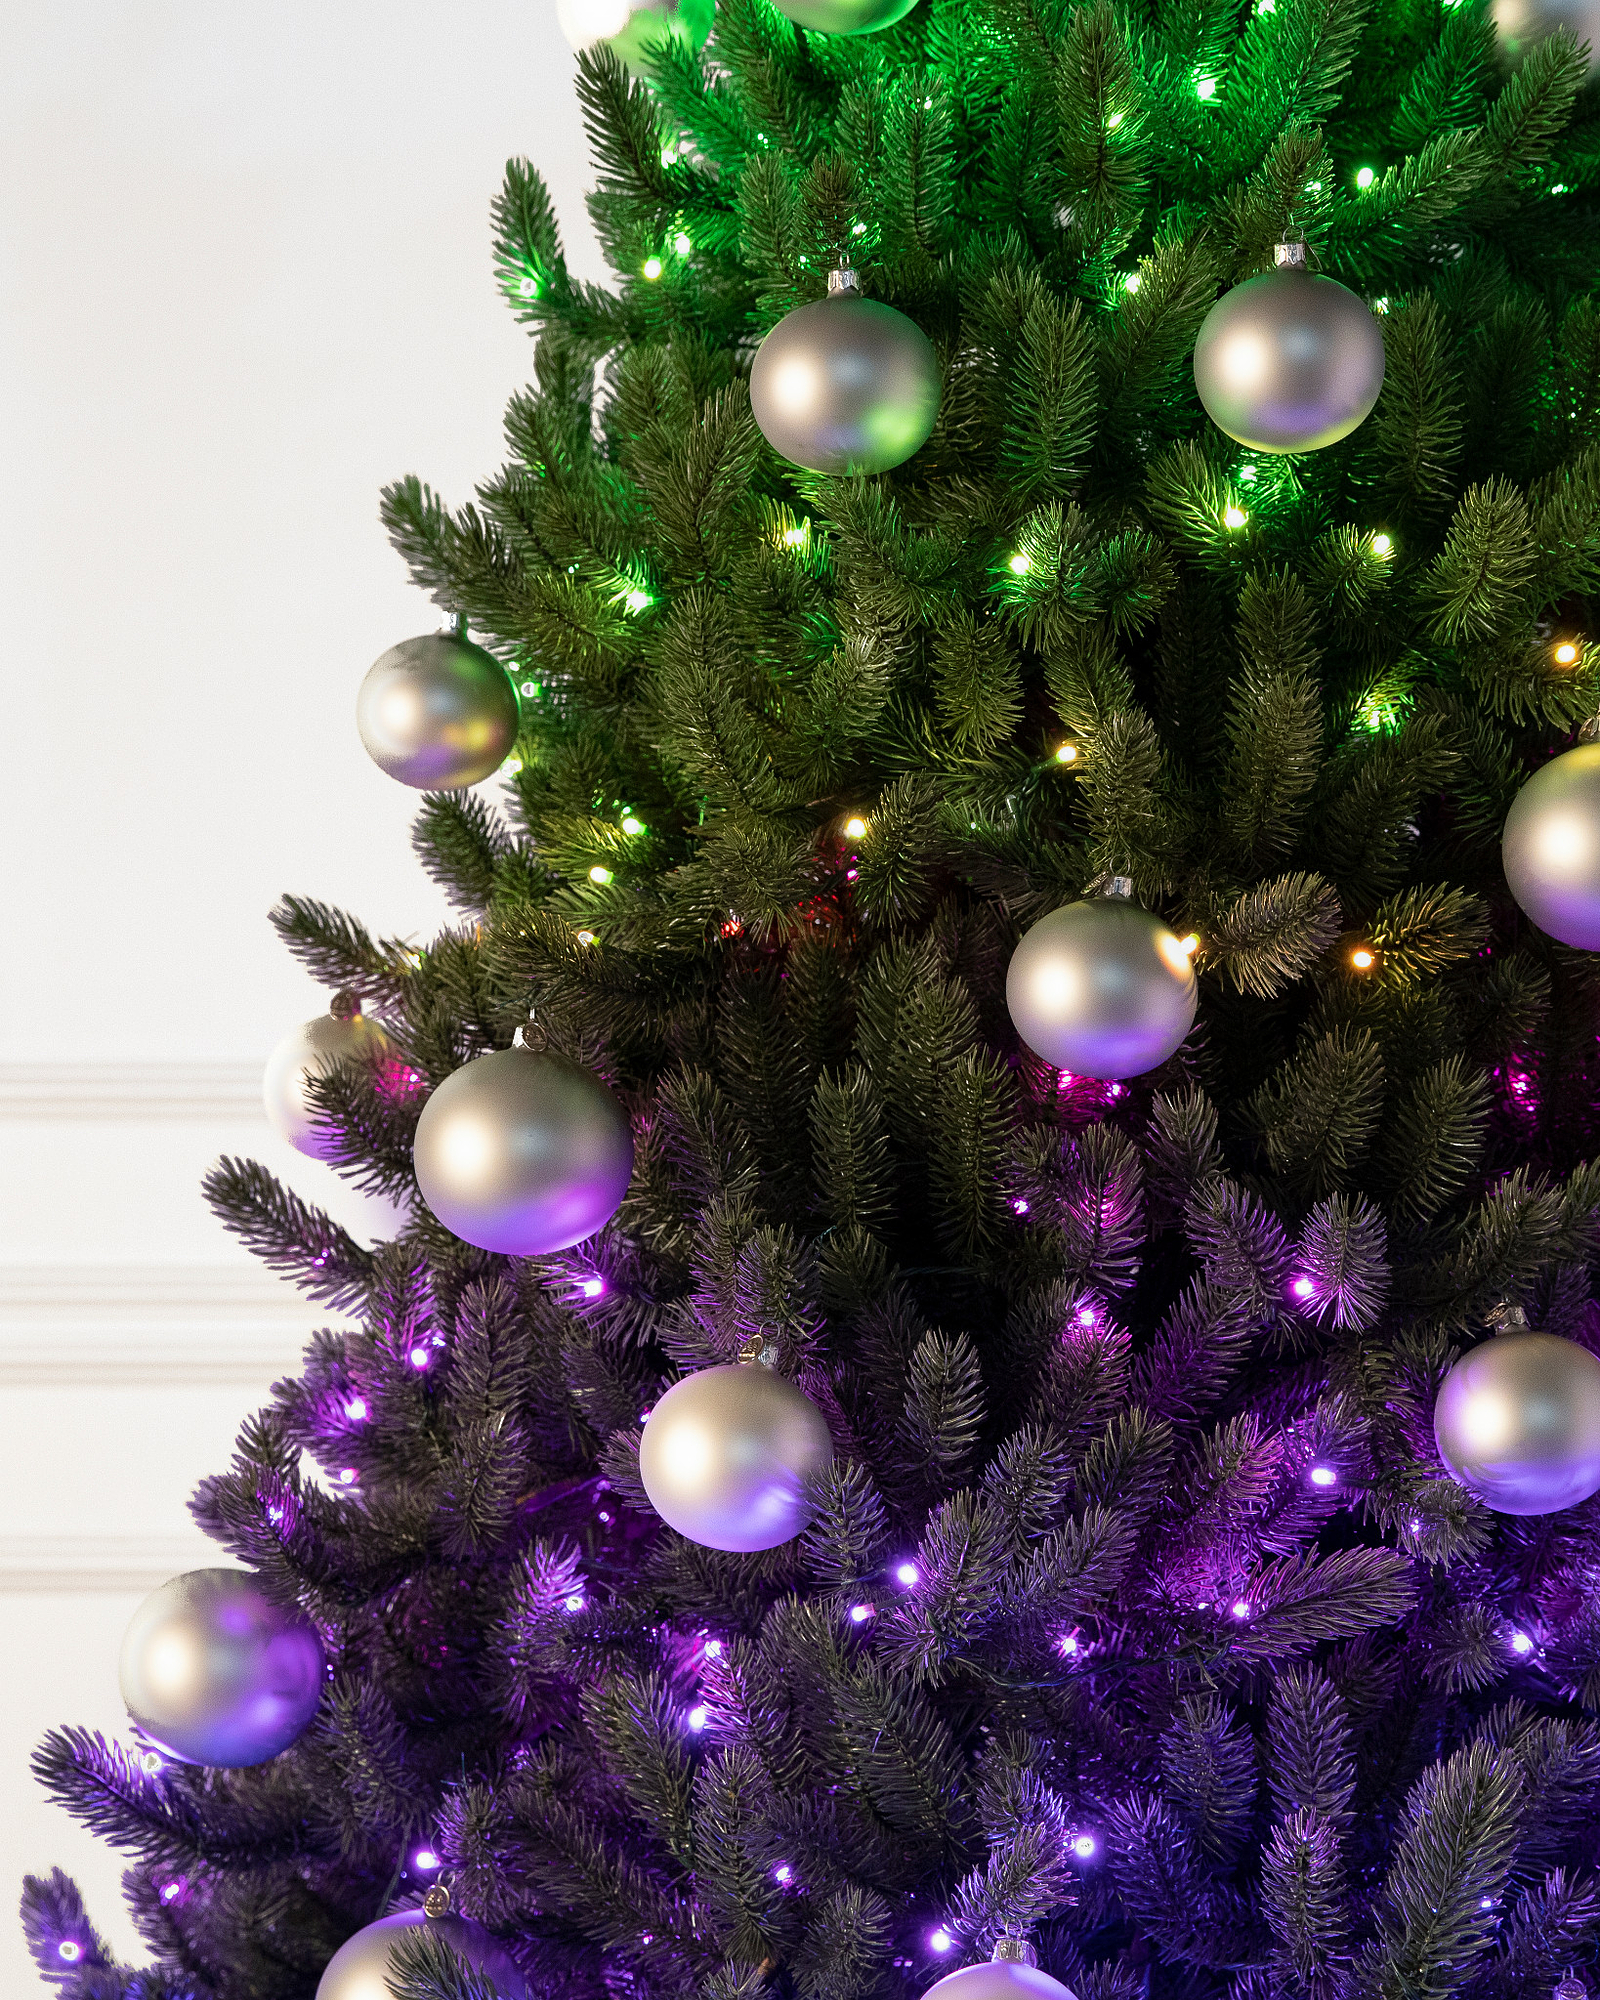 Décor monumental sapin de Noël 3D lumineux et scintillant extérieur H5m  7500 LED blanc chaud et